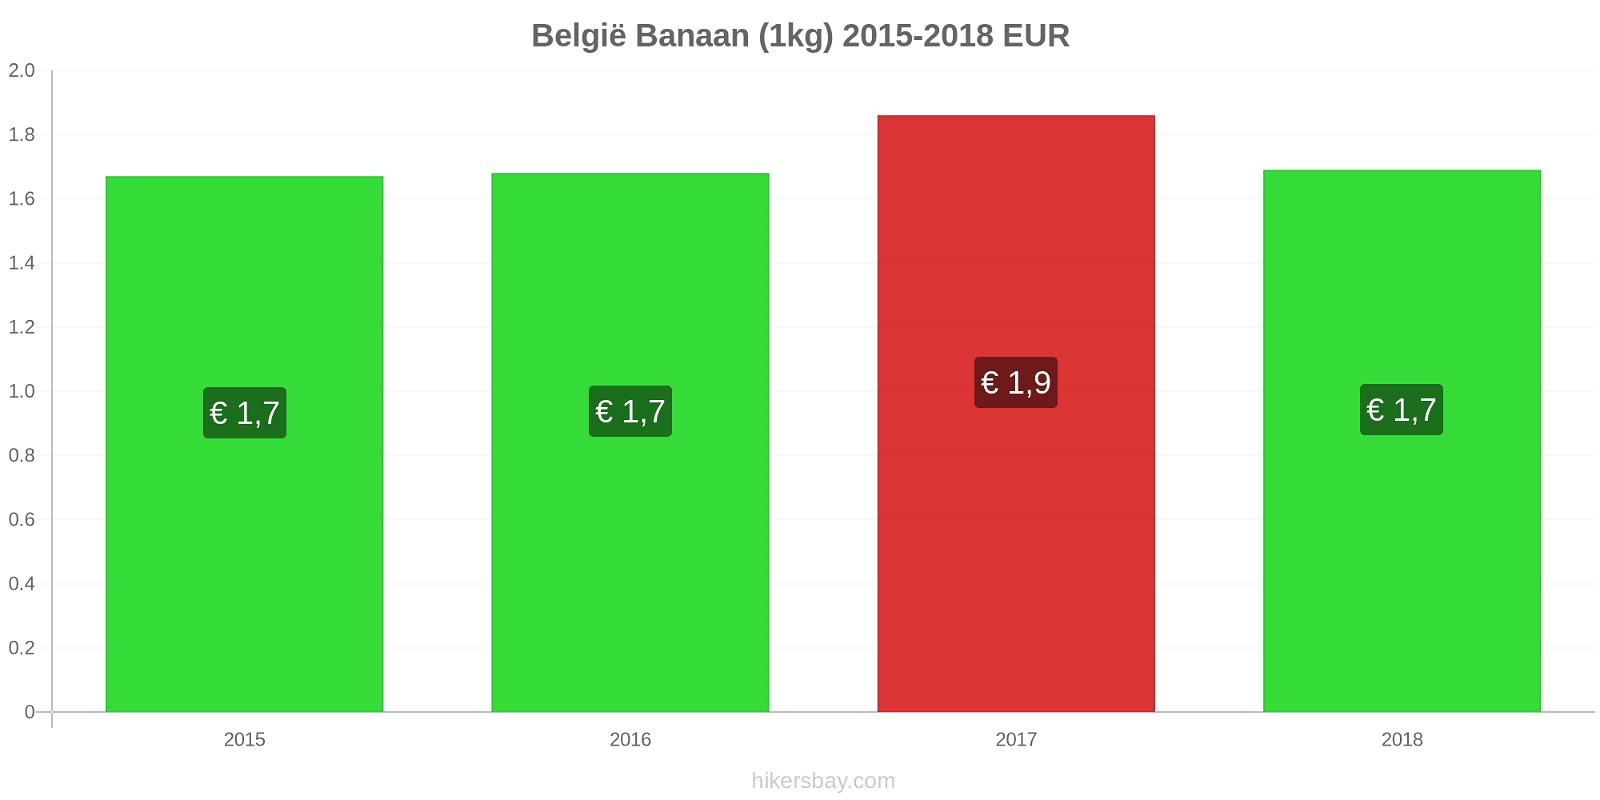 België prijswijzigingen Bananen (1kg) hikersbay.com